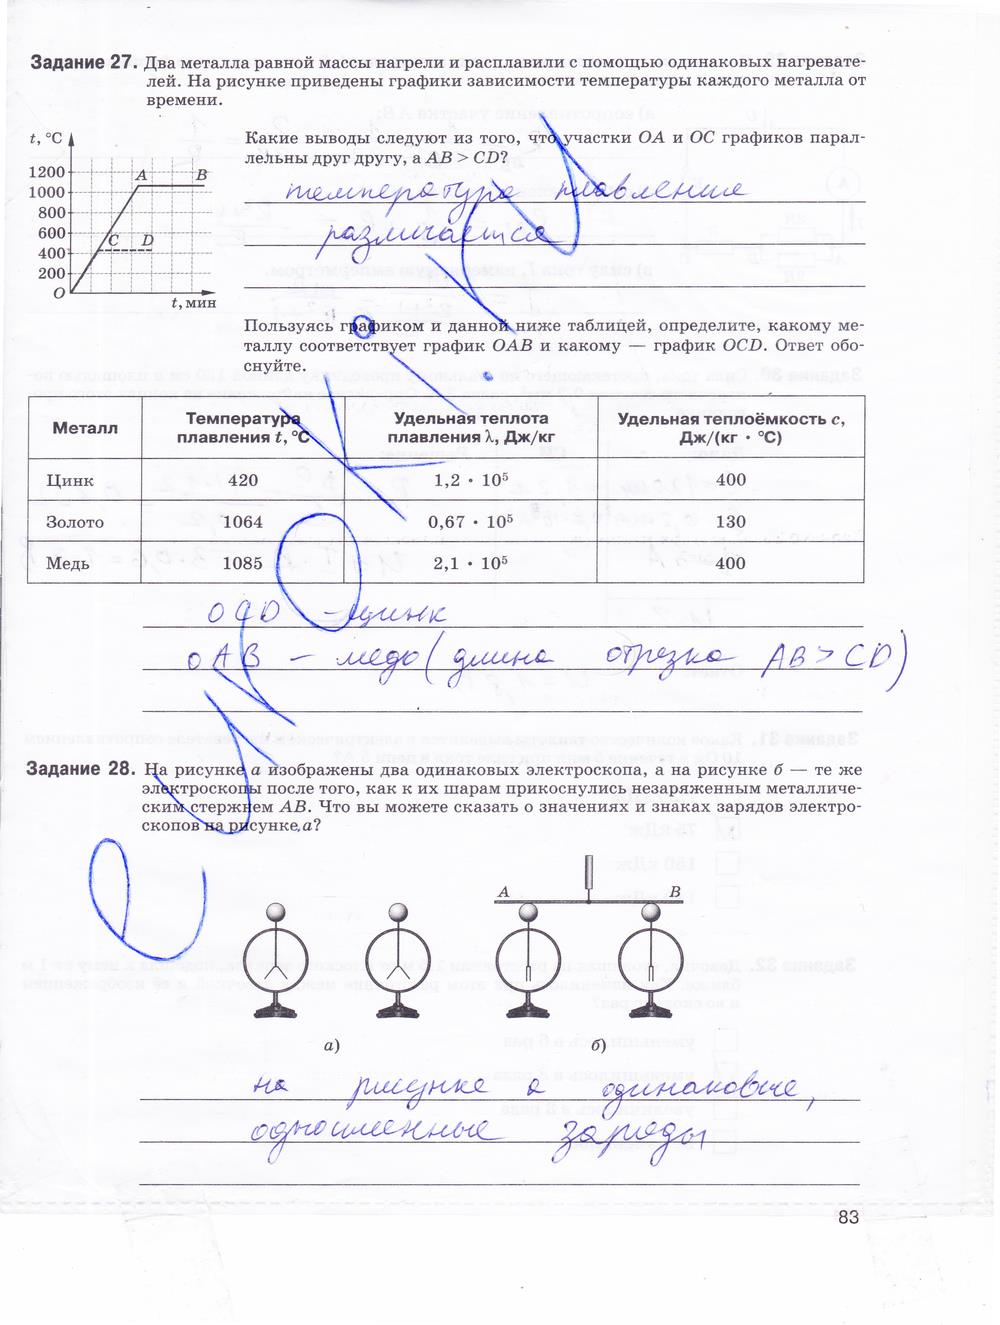 гдз 9 класс рабочая тетрадь страница 83 физика Гутник, Власова